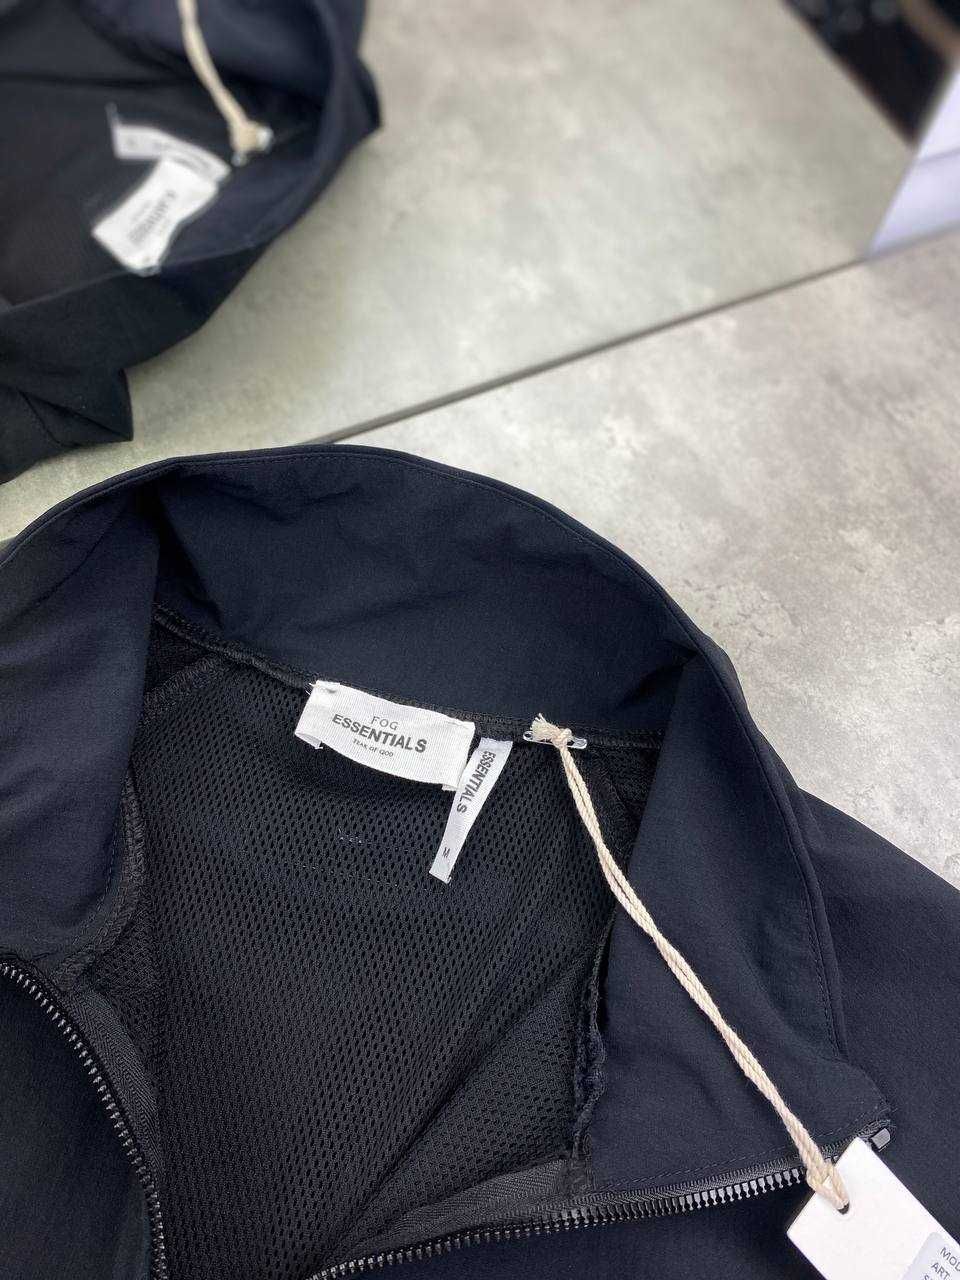 Мужская куртка Essentials черный анорак Ессеншлс ветровка v063